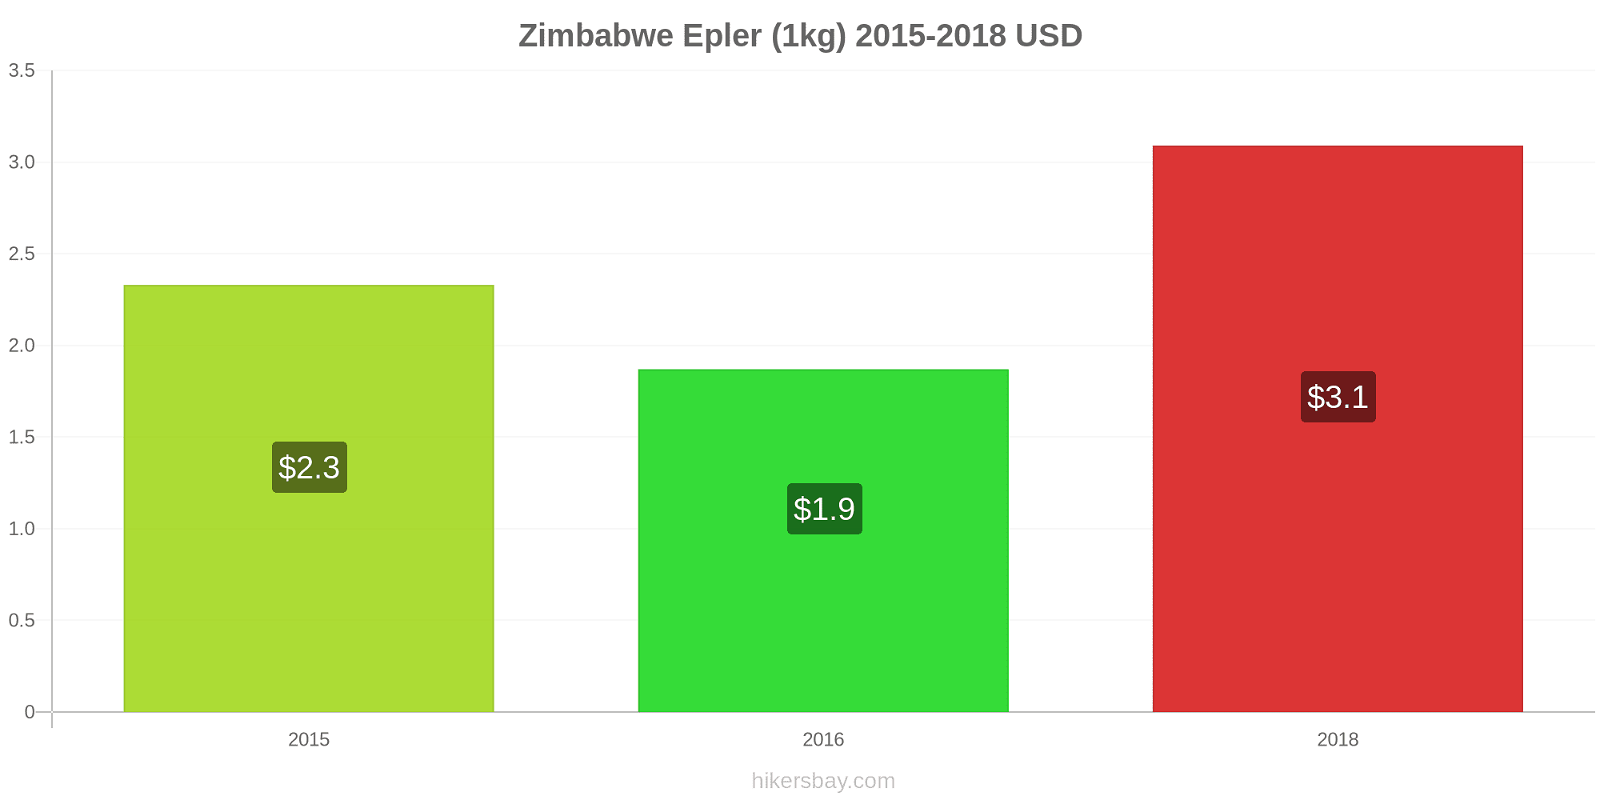 Zimbabwe prisendringer Epler (1kg) hikersbay.com